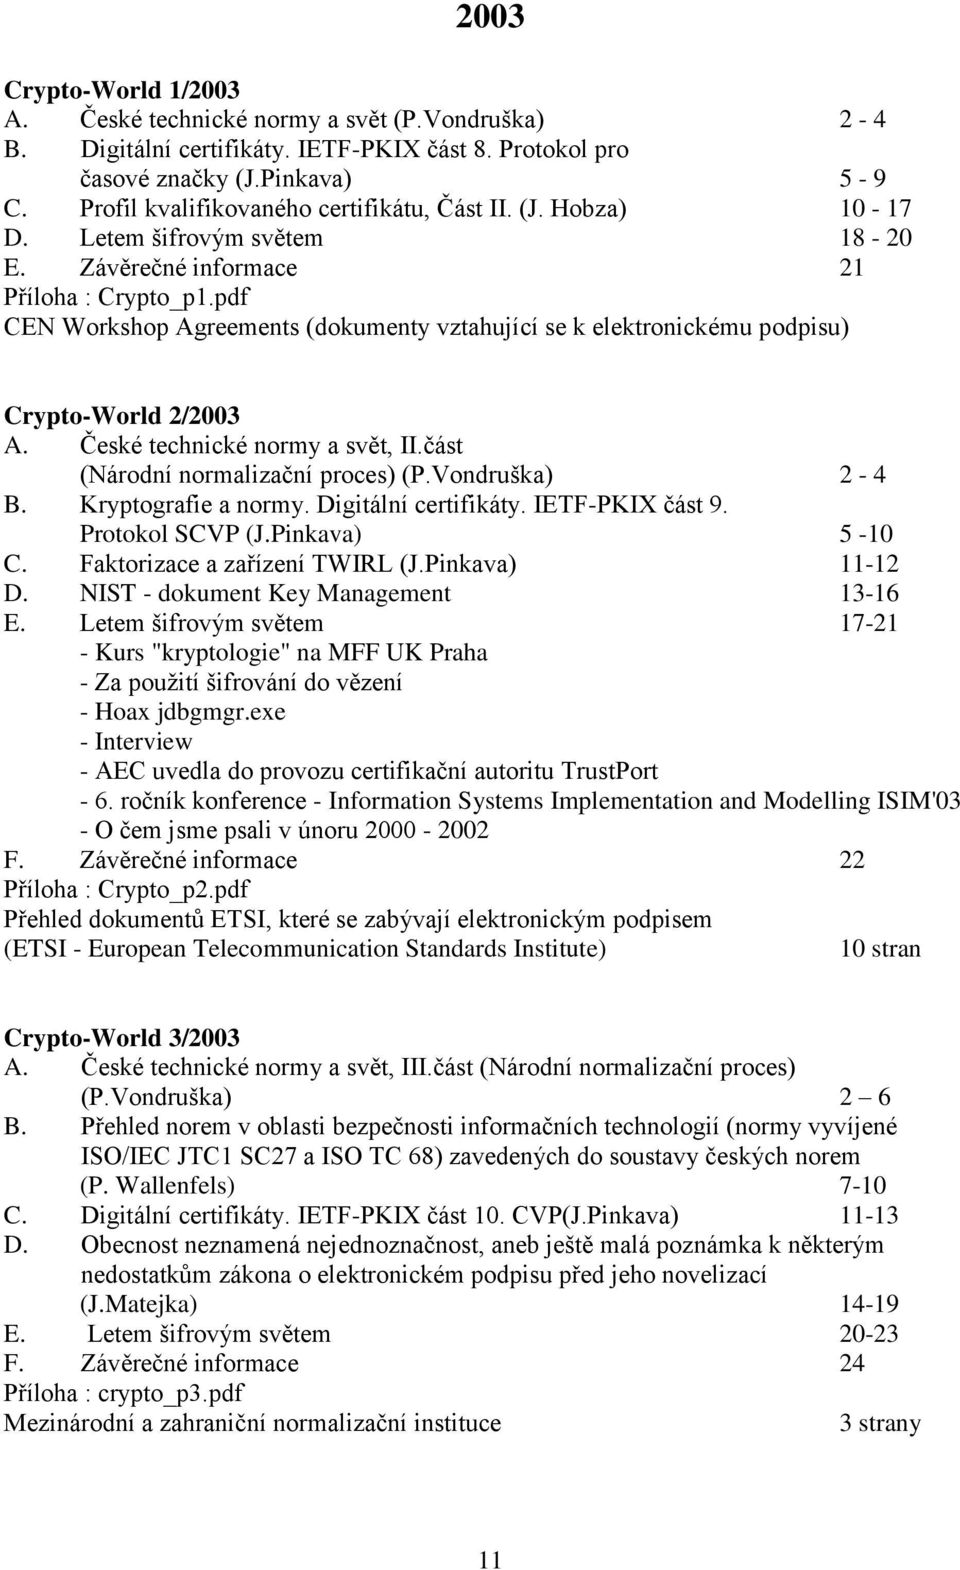 pdf CEN Workshop Agreements (dokumenty vztahující se k elektronickému podpisu) Crypto-World 2/2003 A. České technické normy a svět, II.část (Národní normalizační proces) (P.Vondruška) 2-4 B.